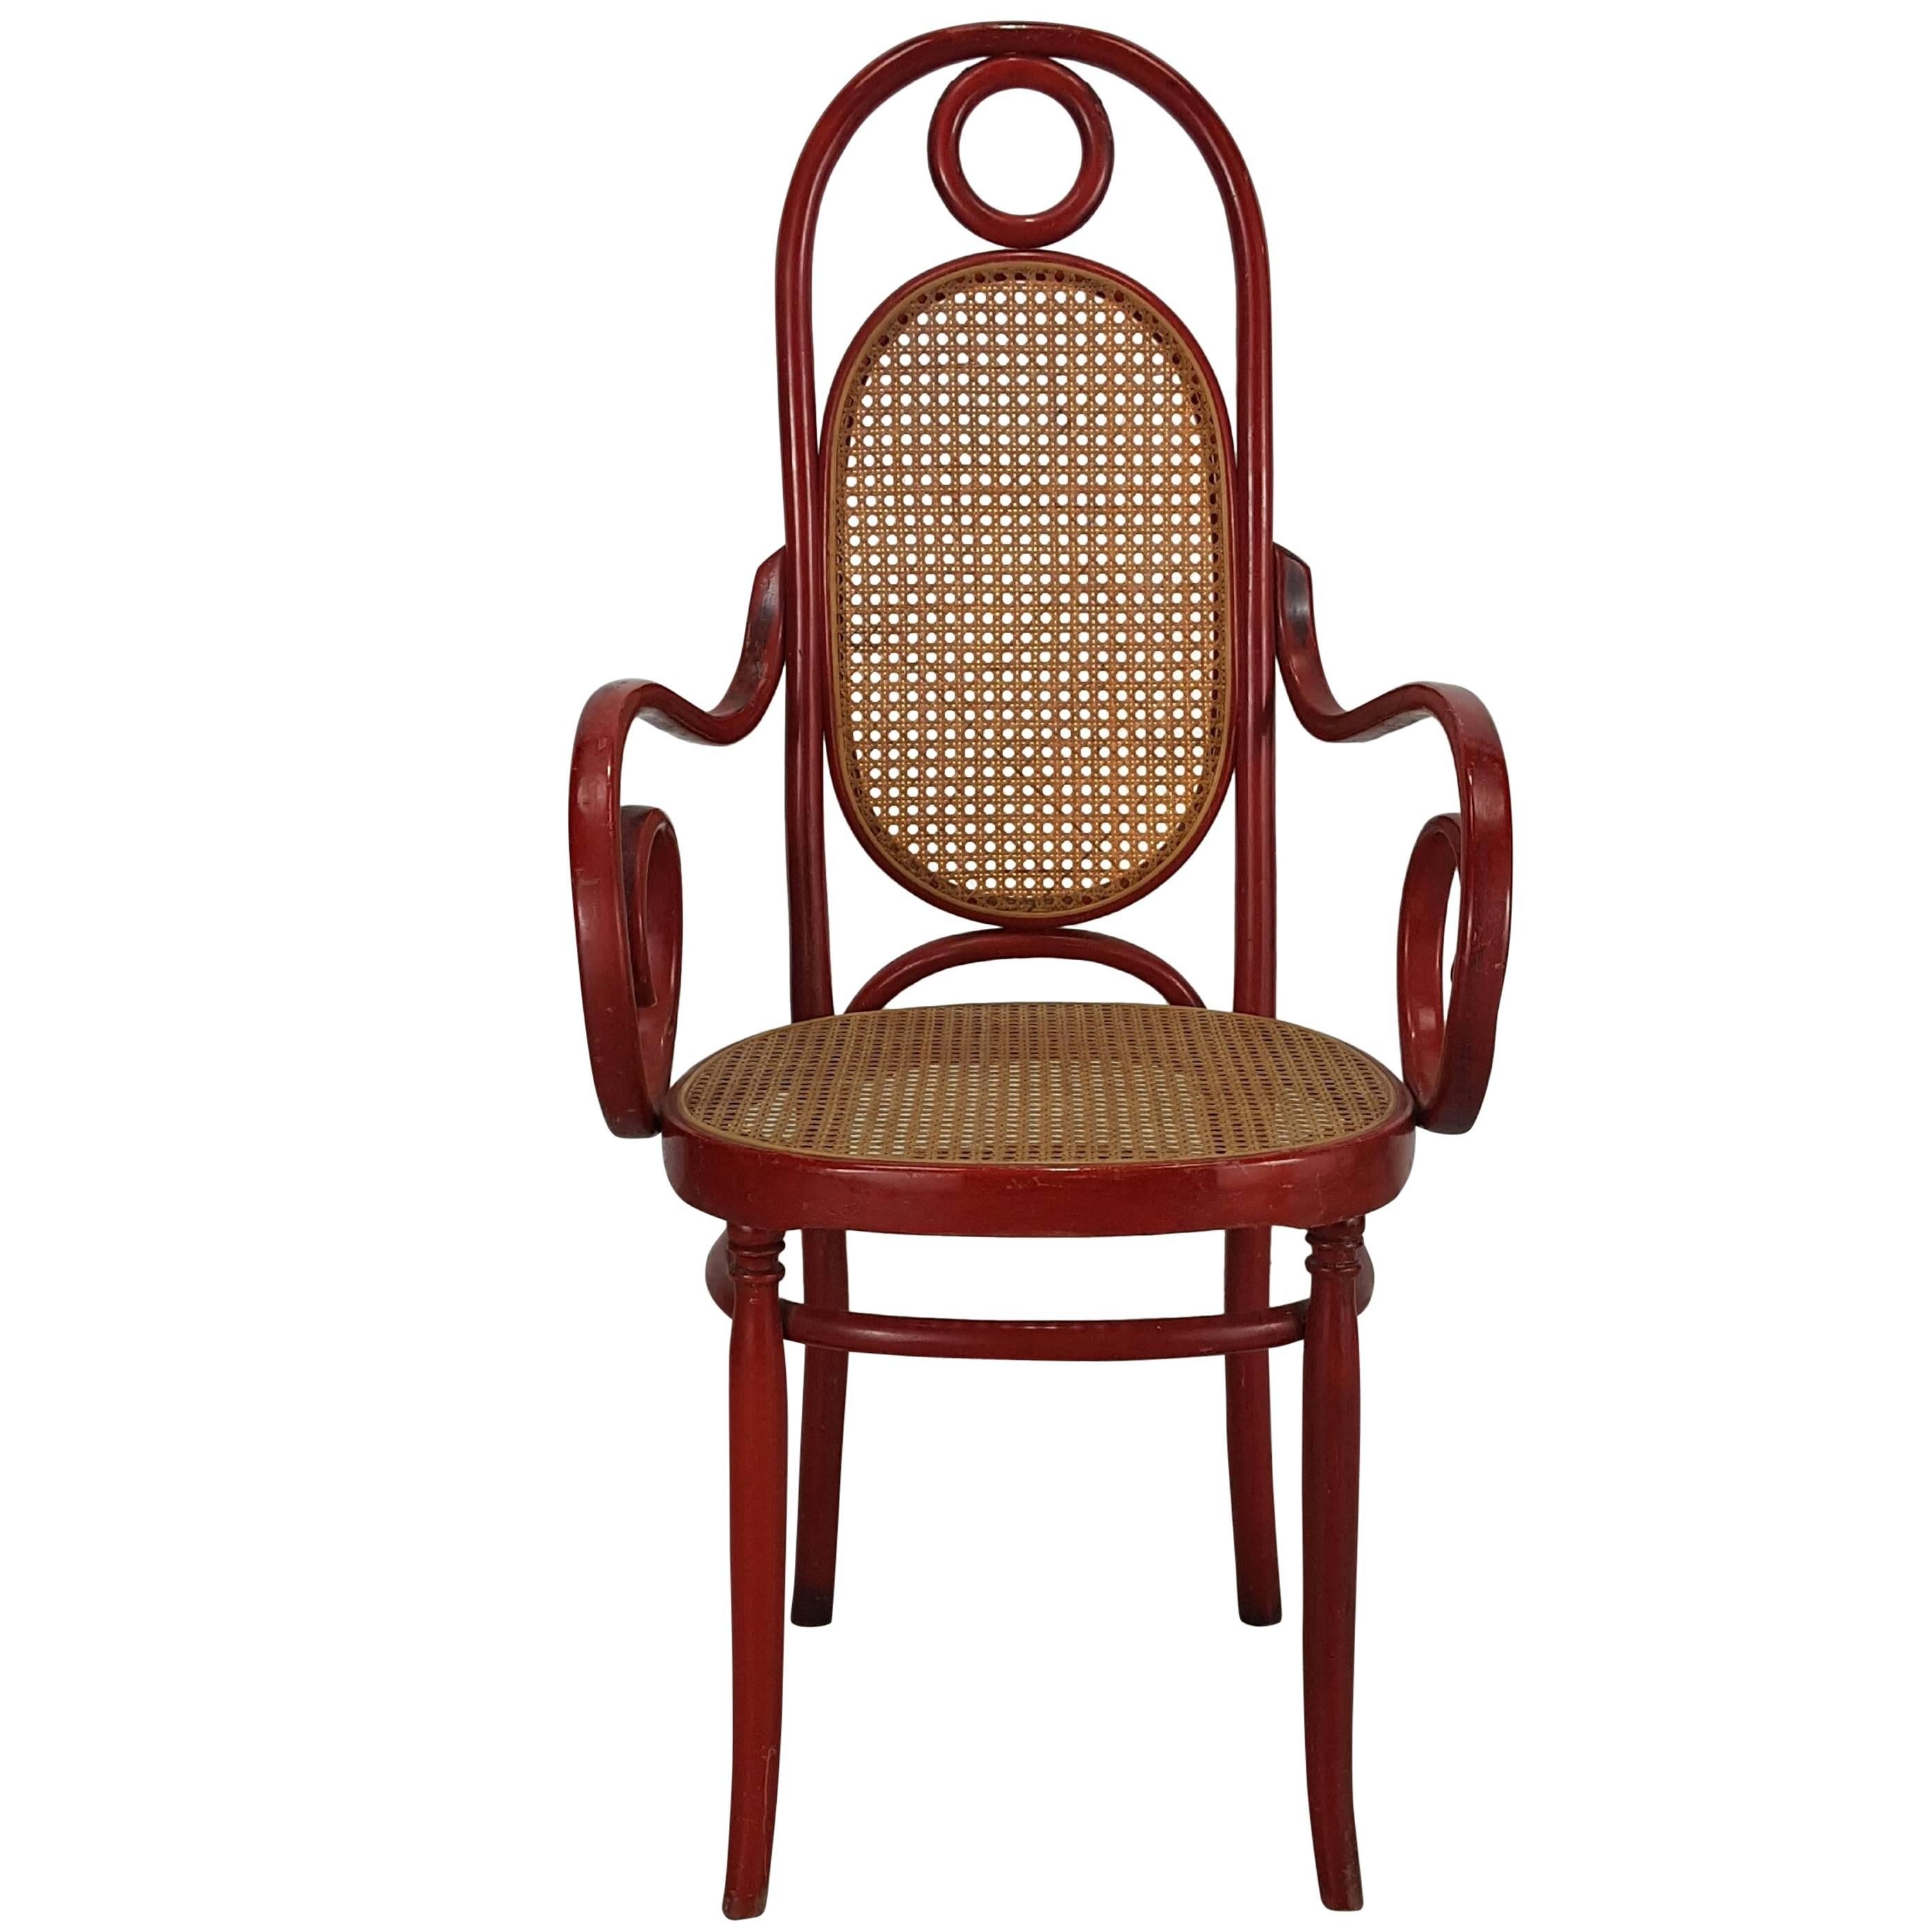  Modell 17 Sessel mit hoher Rückenlehne aus Bugholz von Michael Thonet